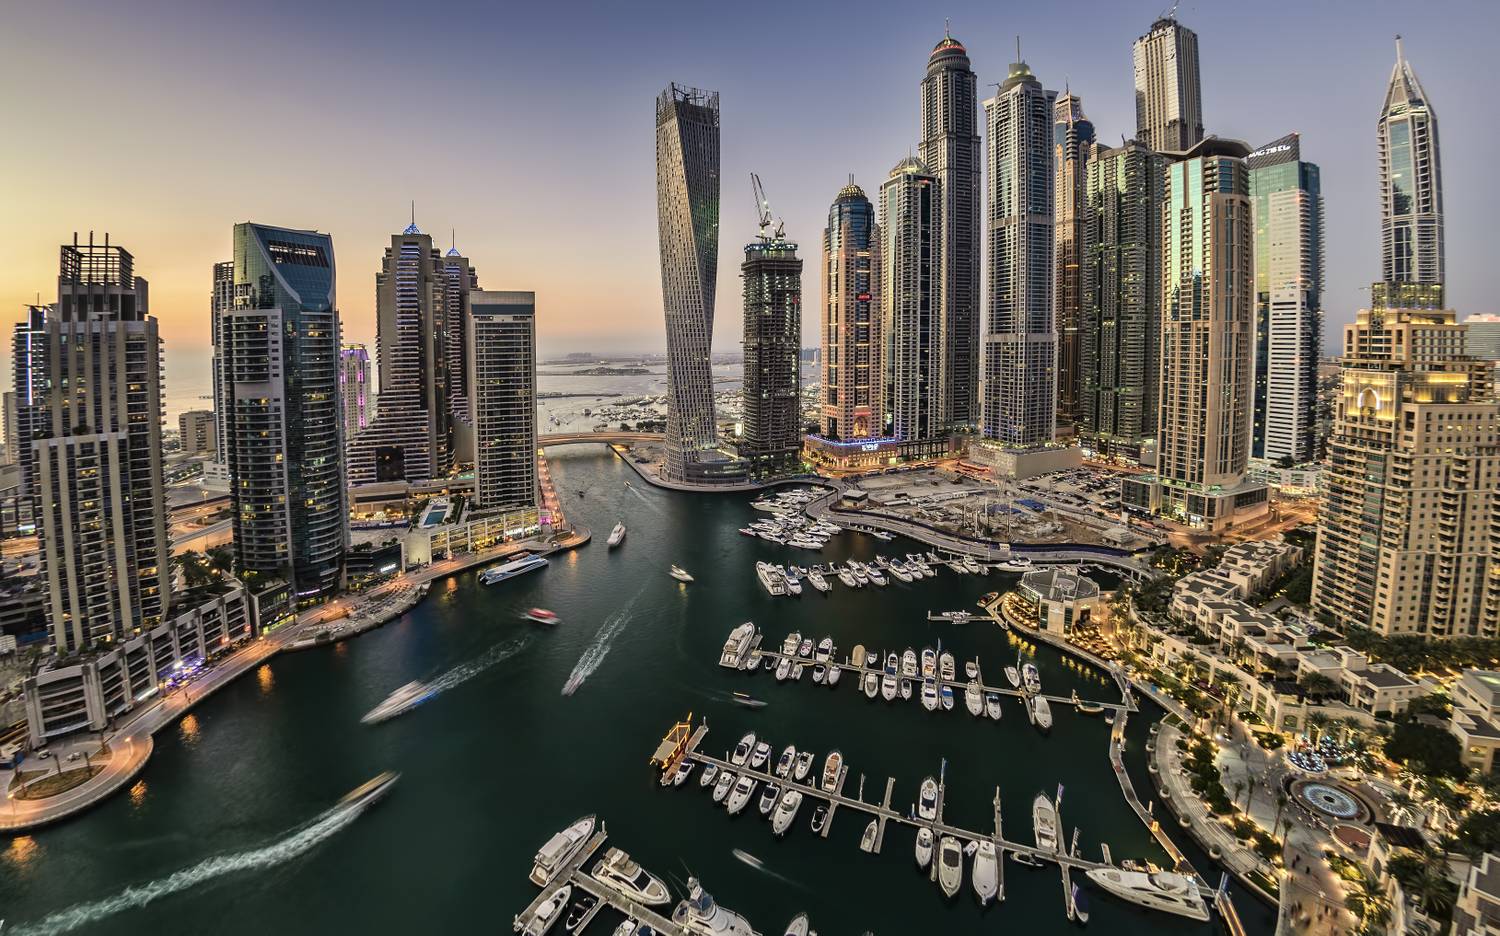 Dubaj, a halászfaluból lett luxusváros a világ egyik népszerűbb turisztikai célpontjává nőtte ki magát, utazók tömkelege szeretné egyszer látni a Burdzs Kalifát, a Marina Walk öblét vagy a Burdzs al-Arabot.